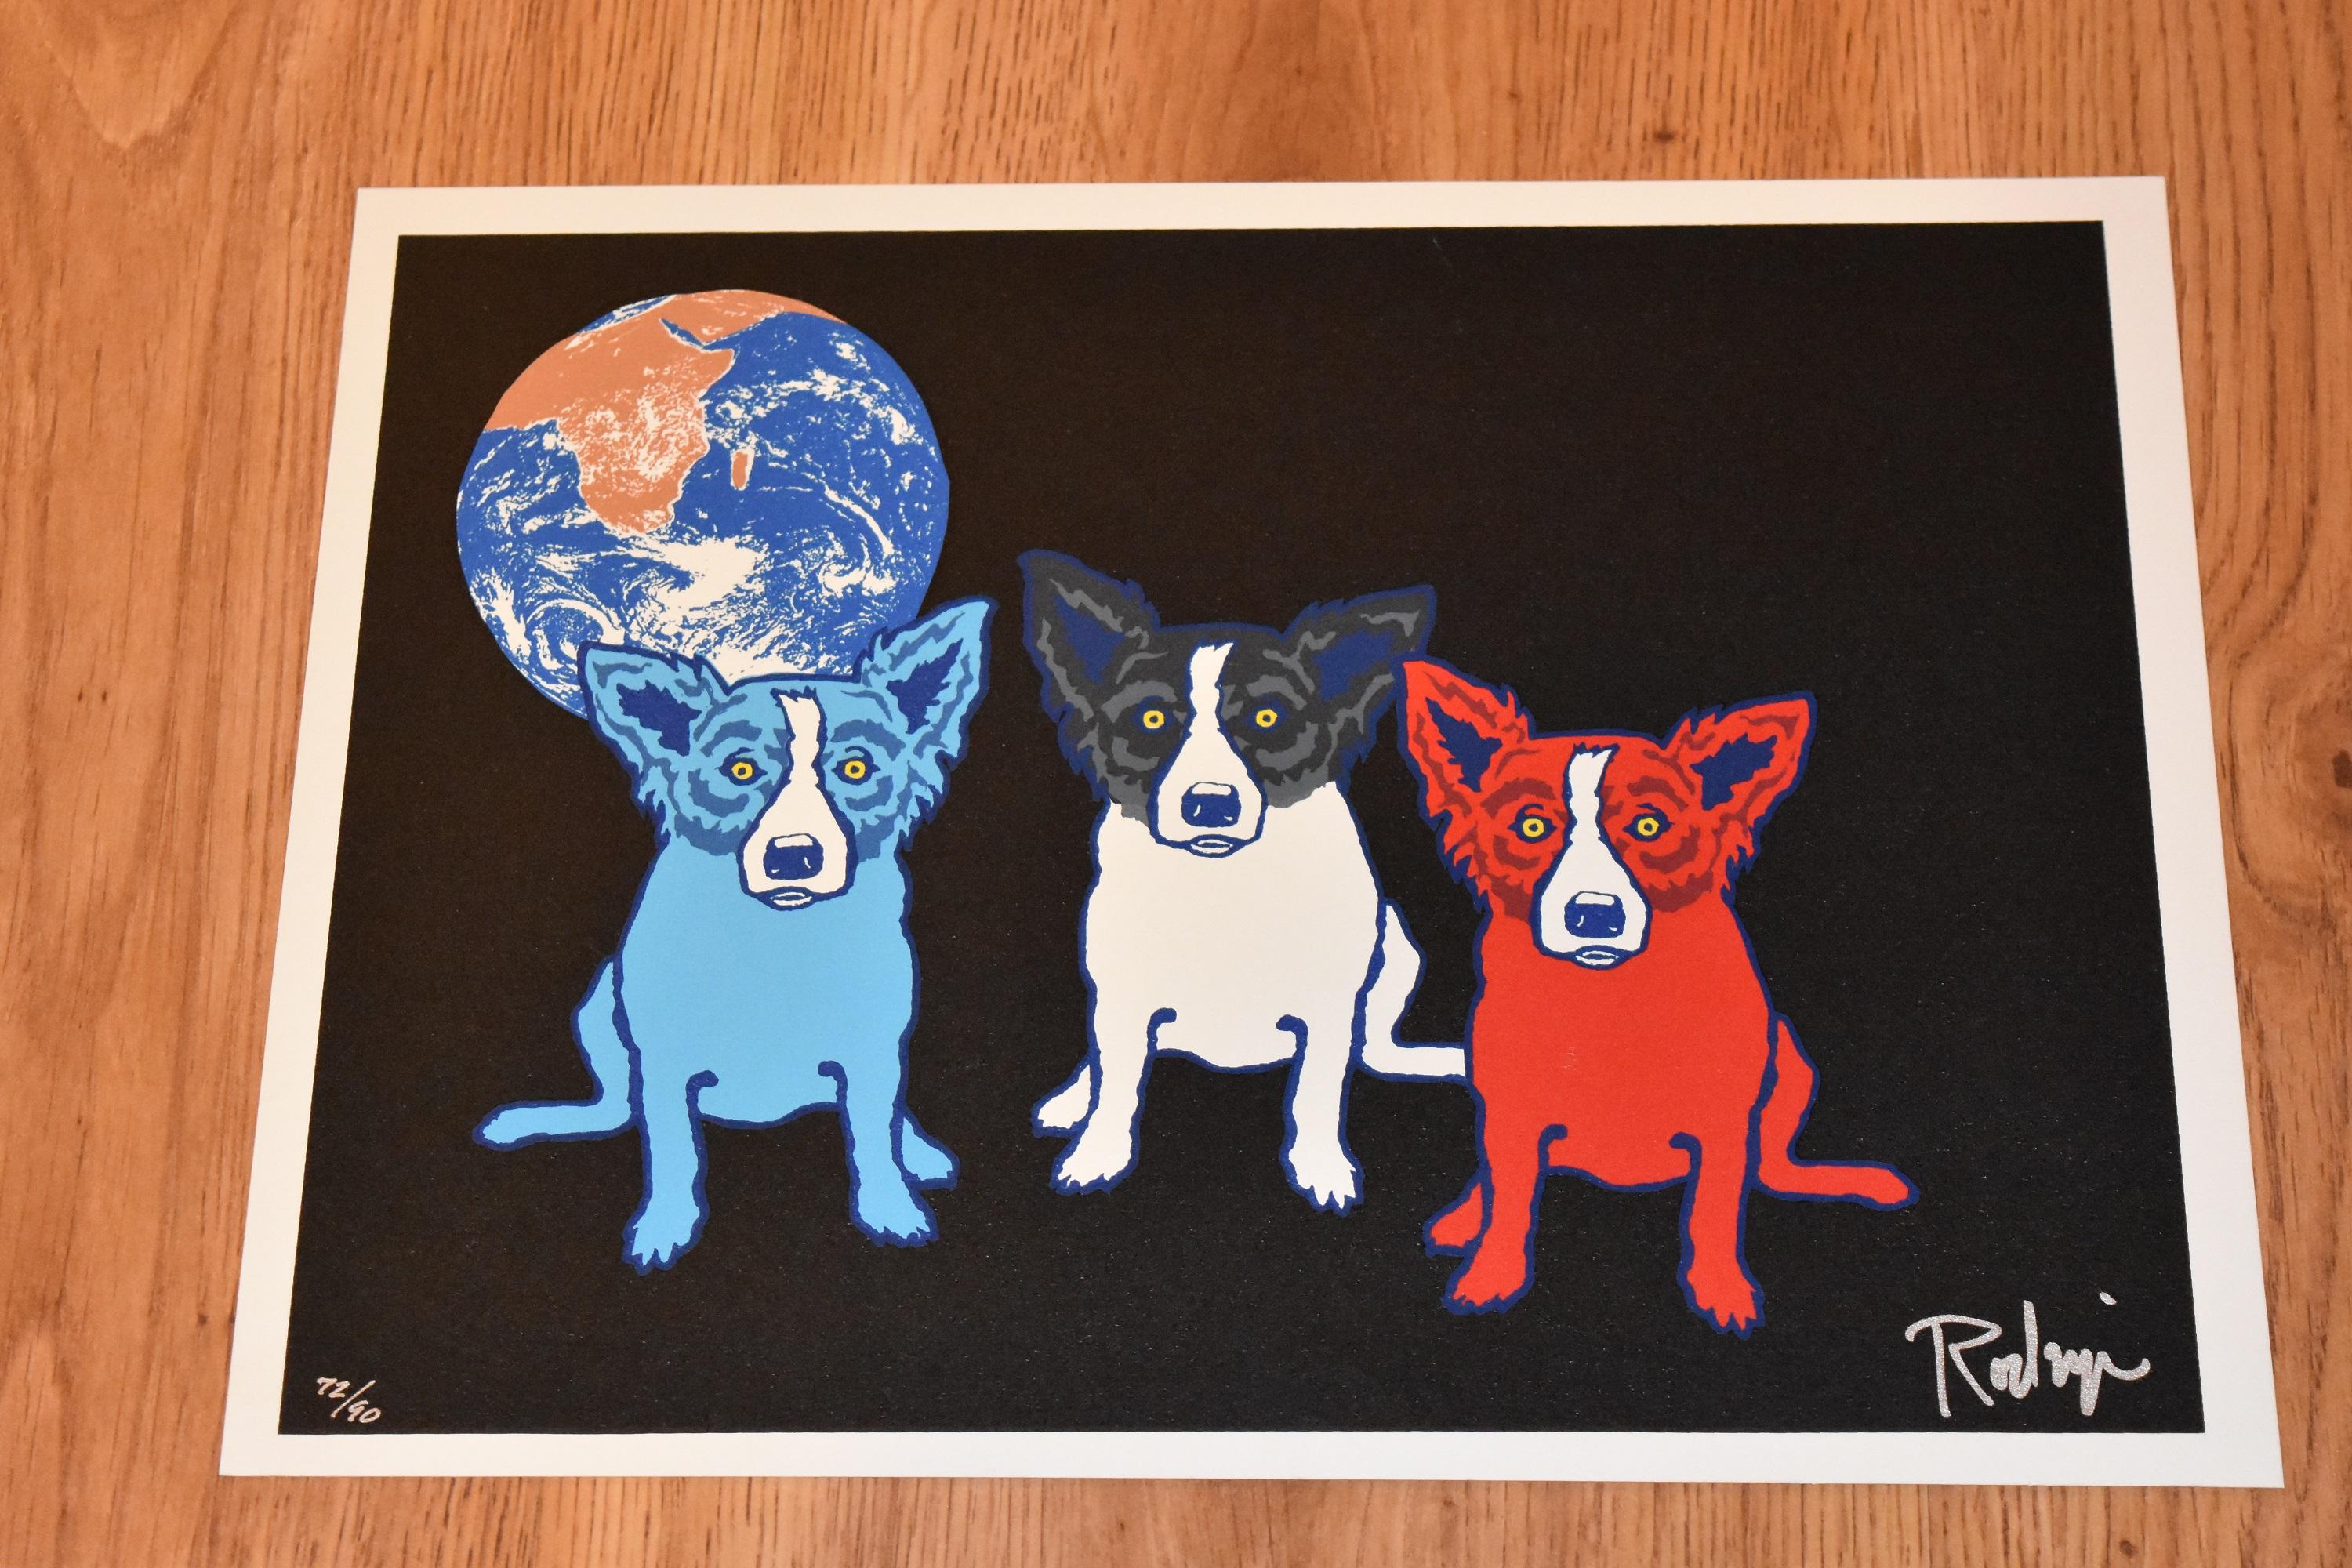 Looking For the Moon – Blauer Seidendruck mit blauem Hund – Print von George Rodrigue